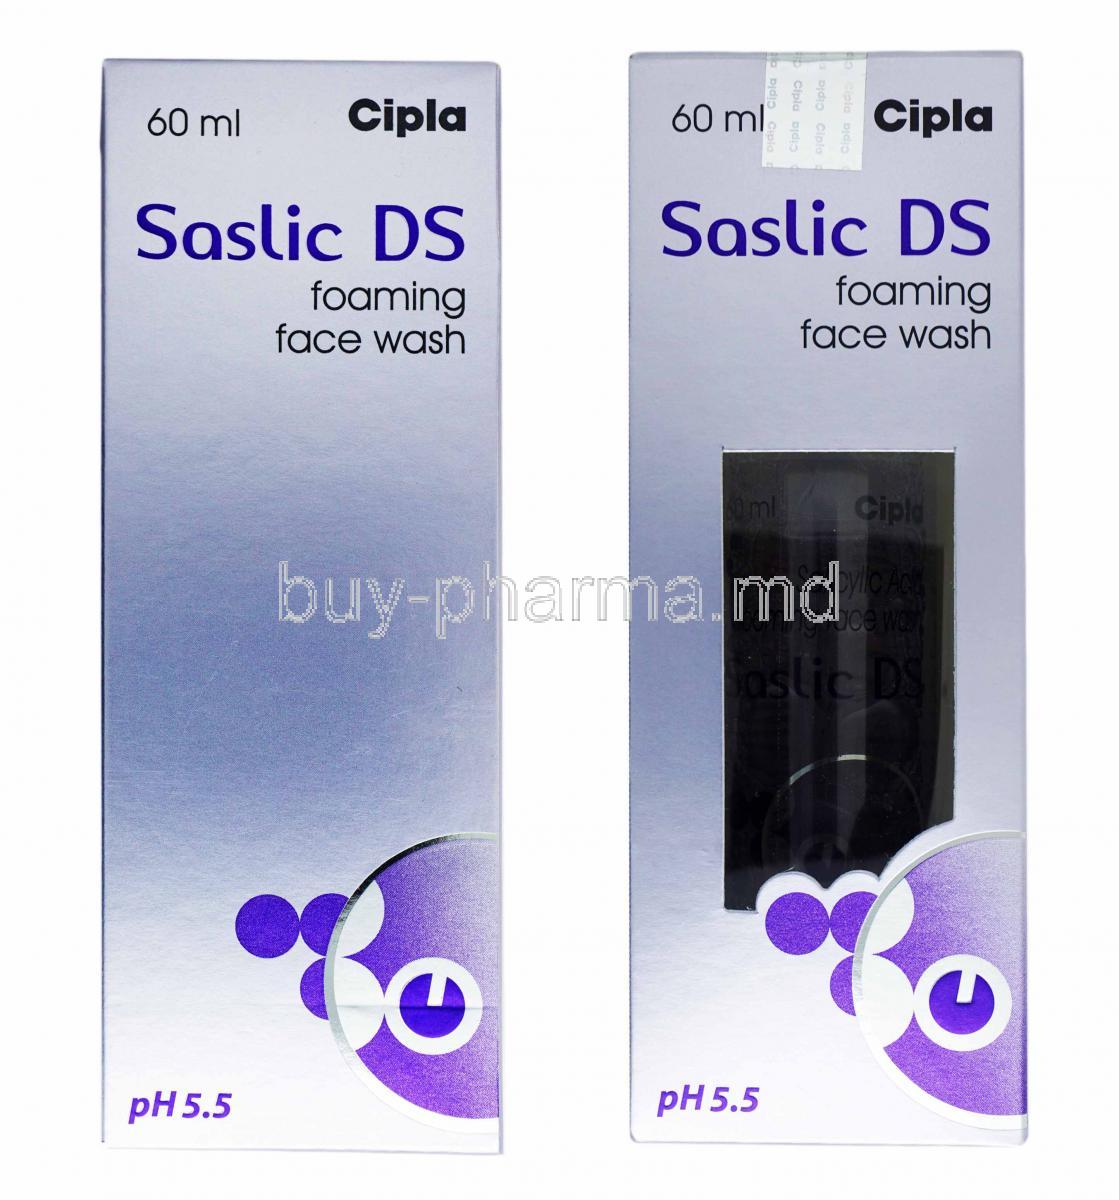 Saslic DS Foaming Face Wash, Salicylic Acid box and bottle